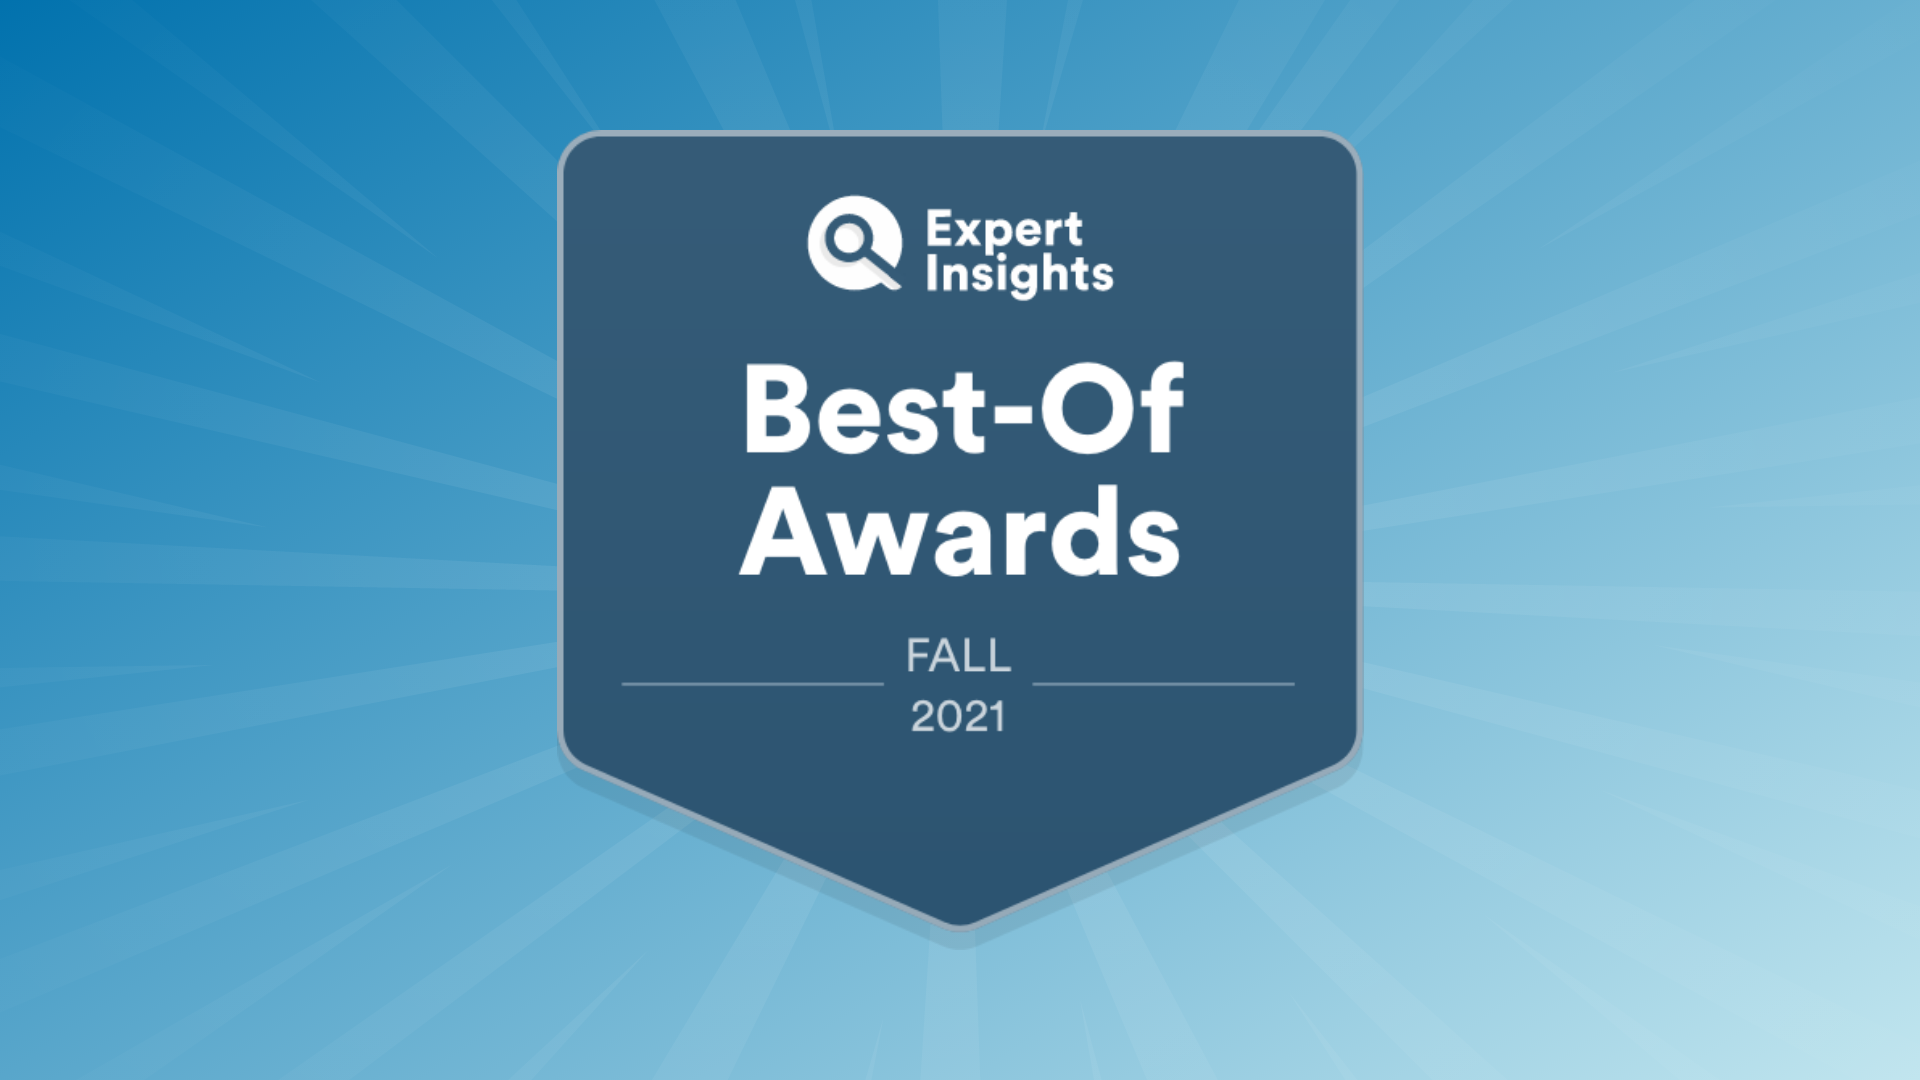 Expert Insights Announces Fall 2021 “Best-Of” Award Winners